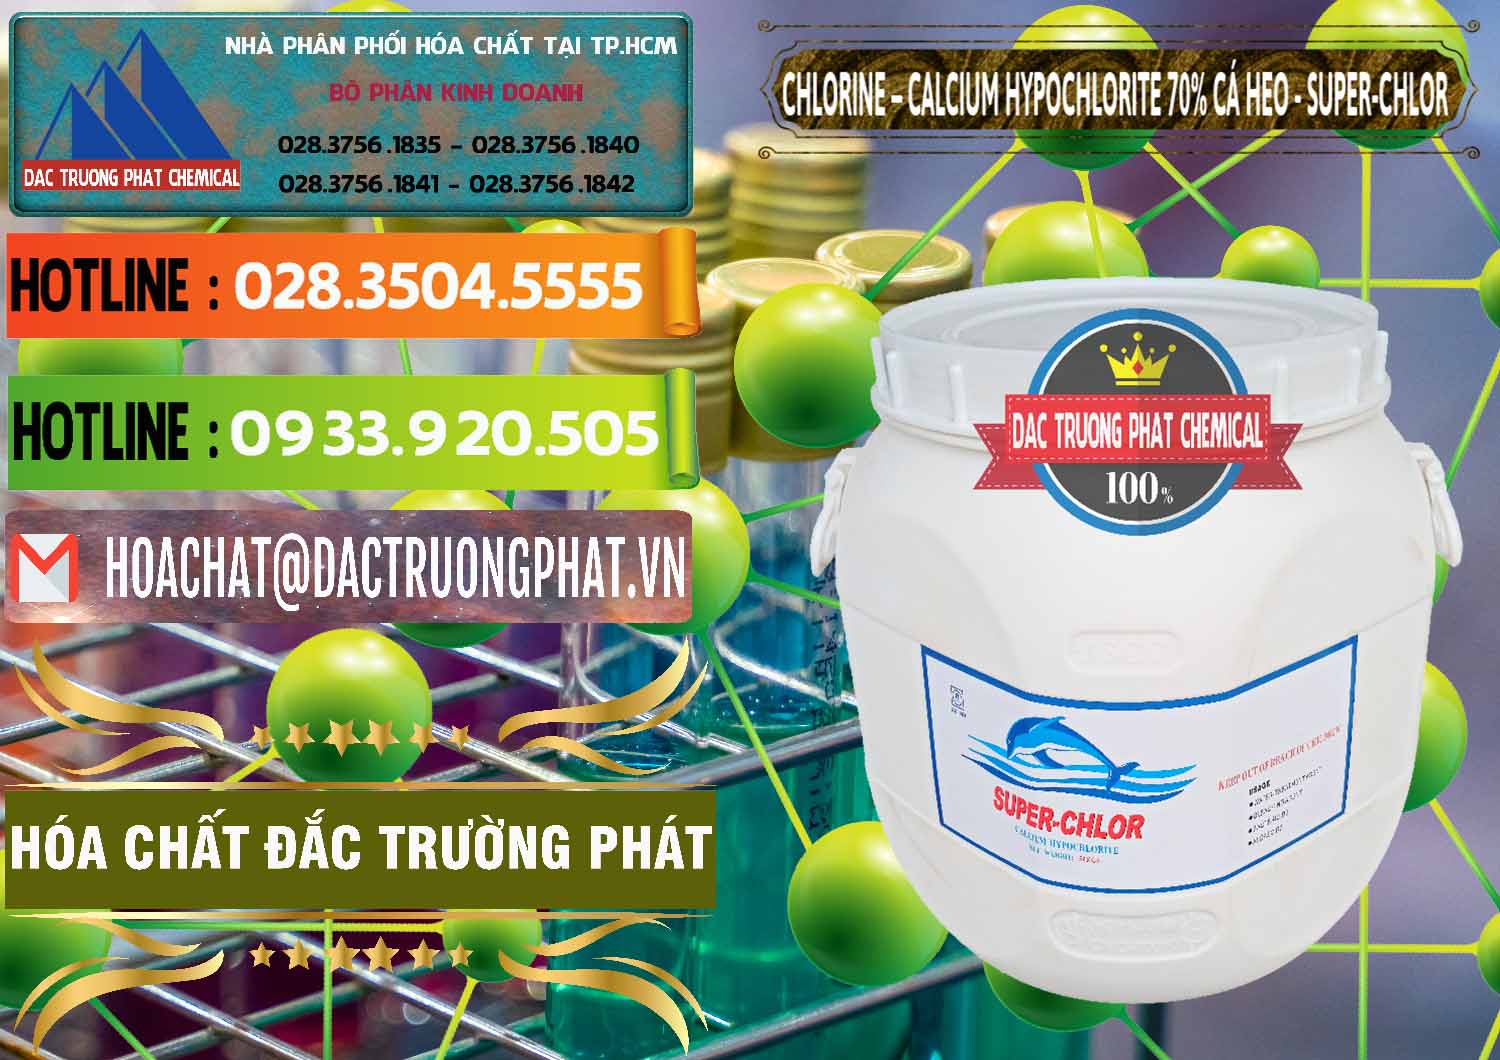 Chuyên bán và phân phối Clorin - Chlorine Cá Heo 70% Super Chlor Trung Quốc China - 0058 - Kinh doanh _ phân phối hóa chất tại TP.HCM - cungcaphoachat.com.vn